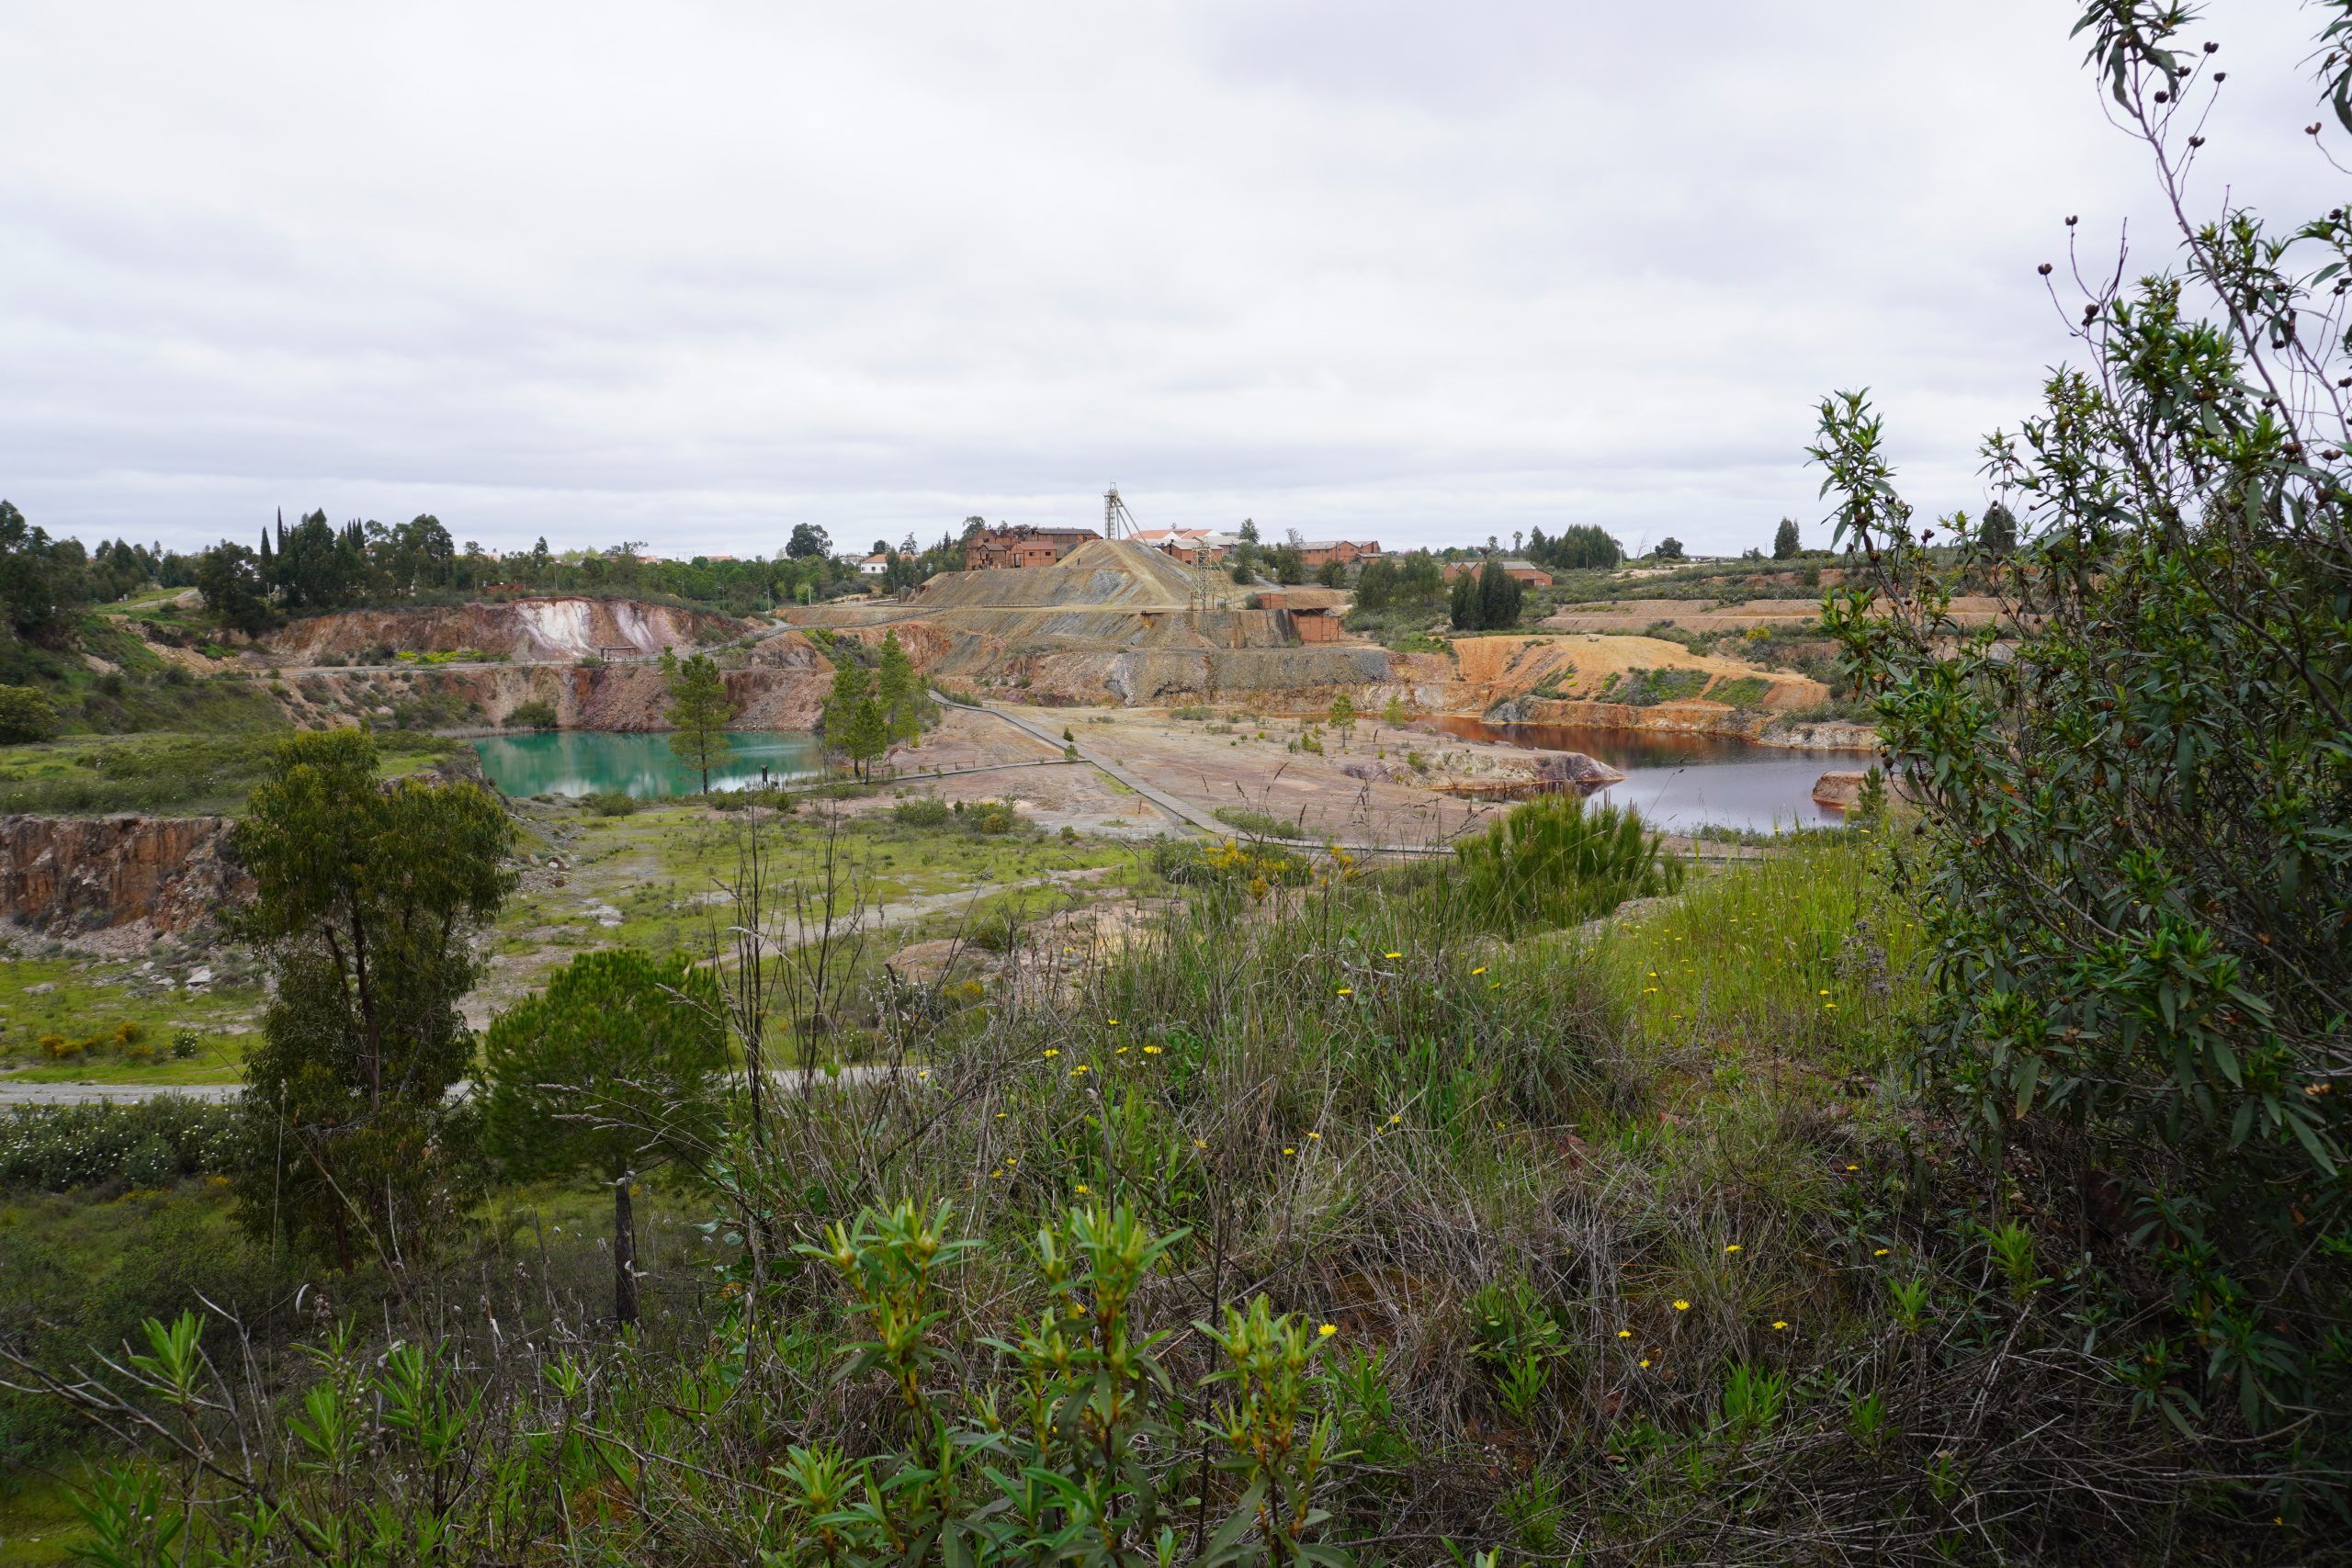 Life Ribermine  con “Piernas Pr’ Caminar” de la semana de la ruta de minas y puntos de interés minero y geológico de Portugal